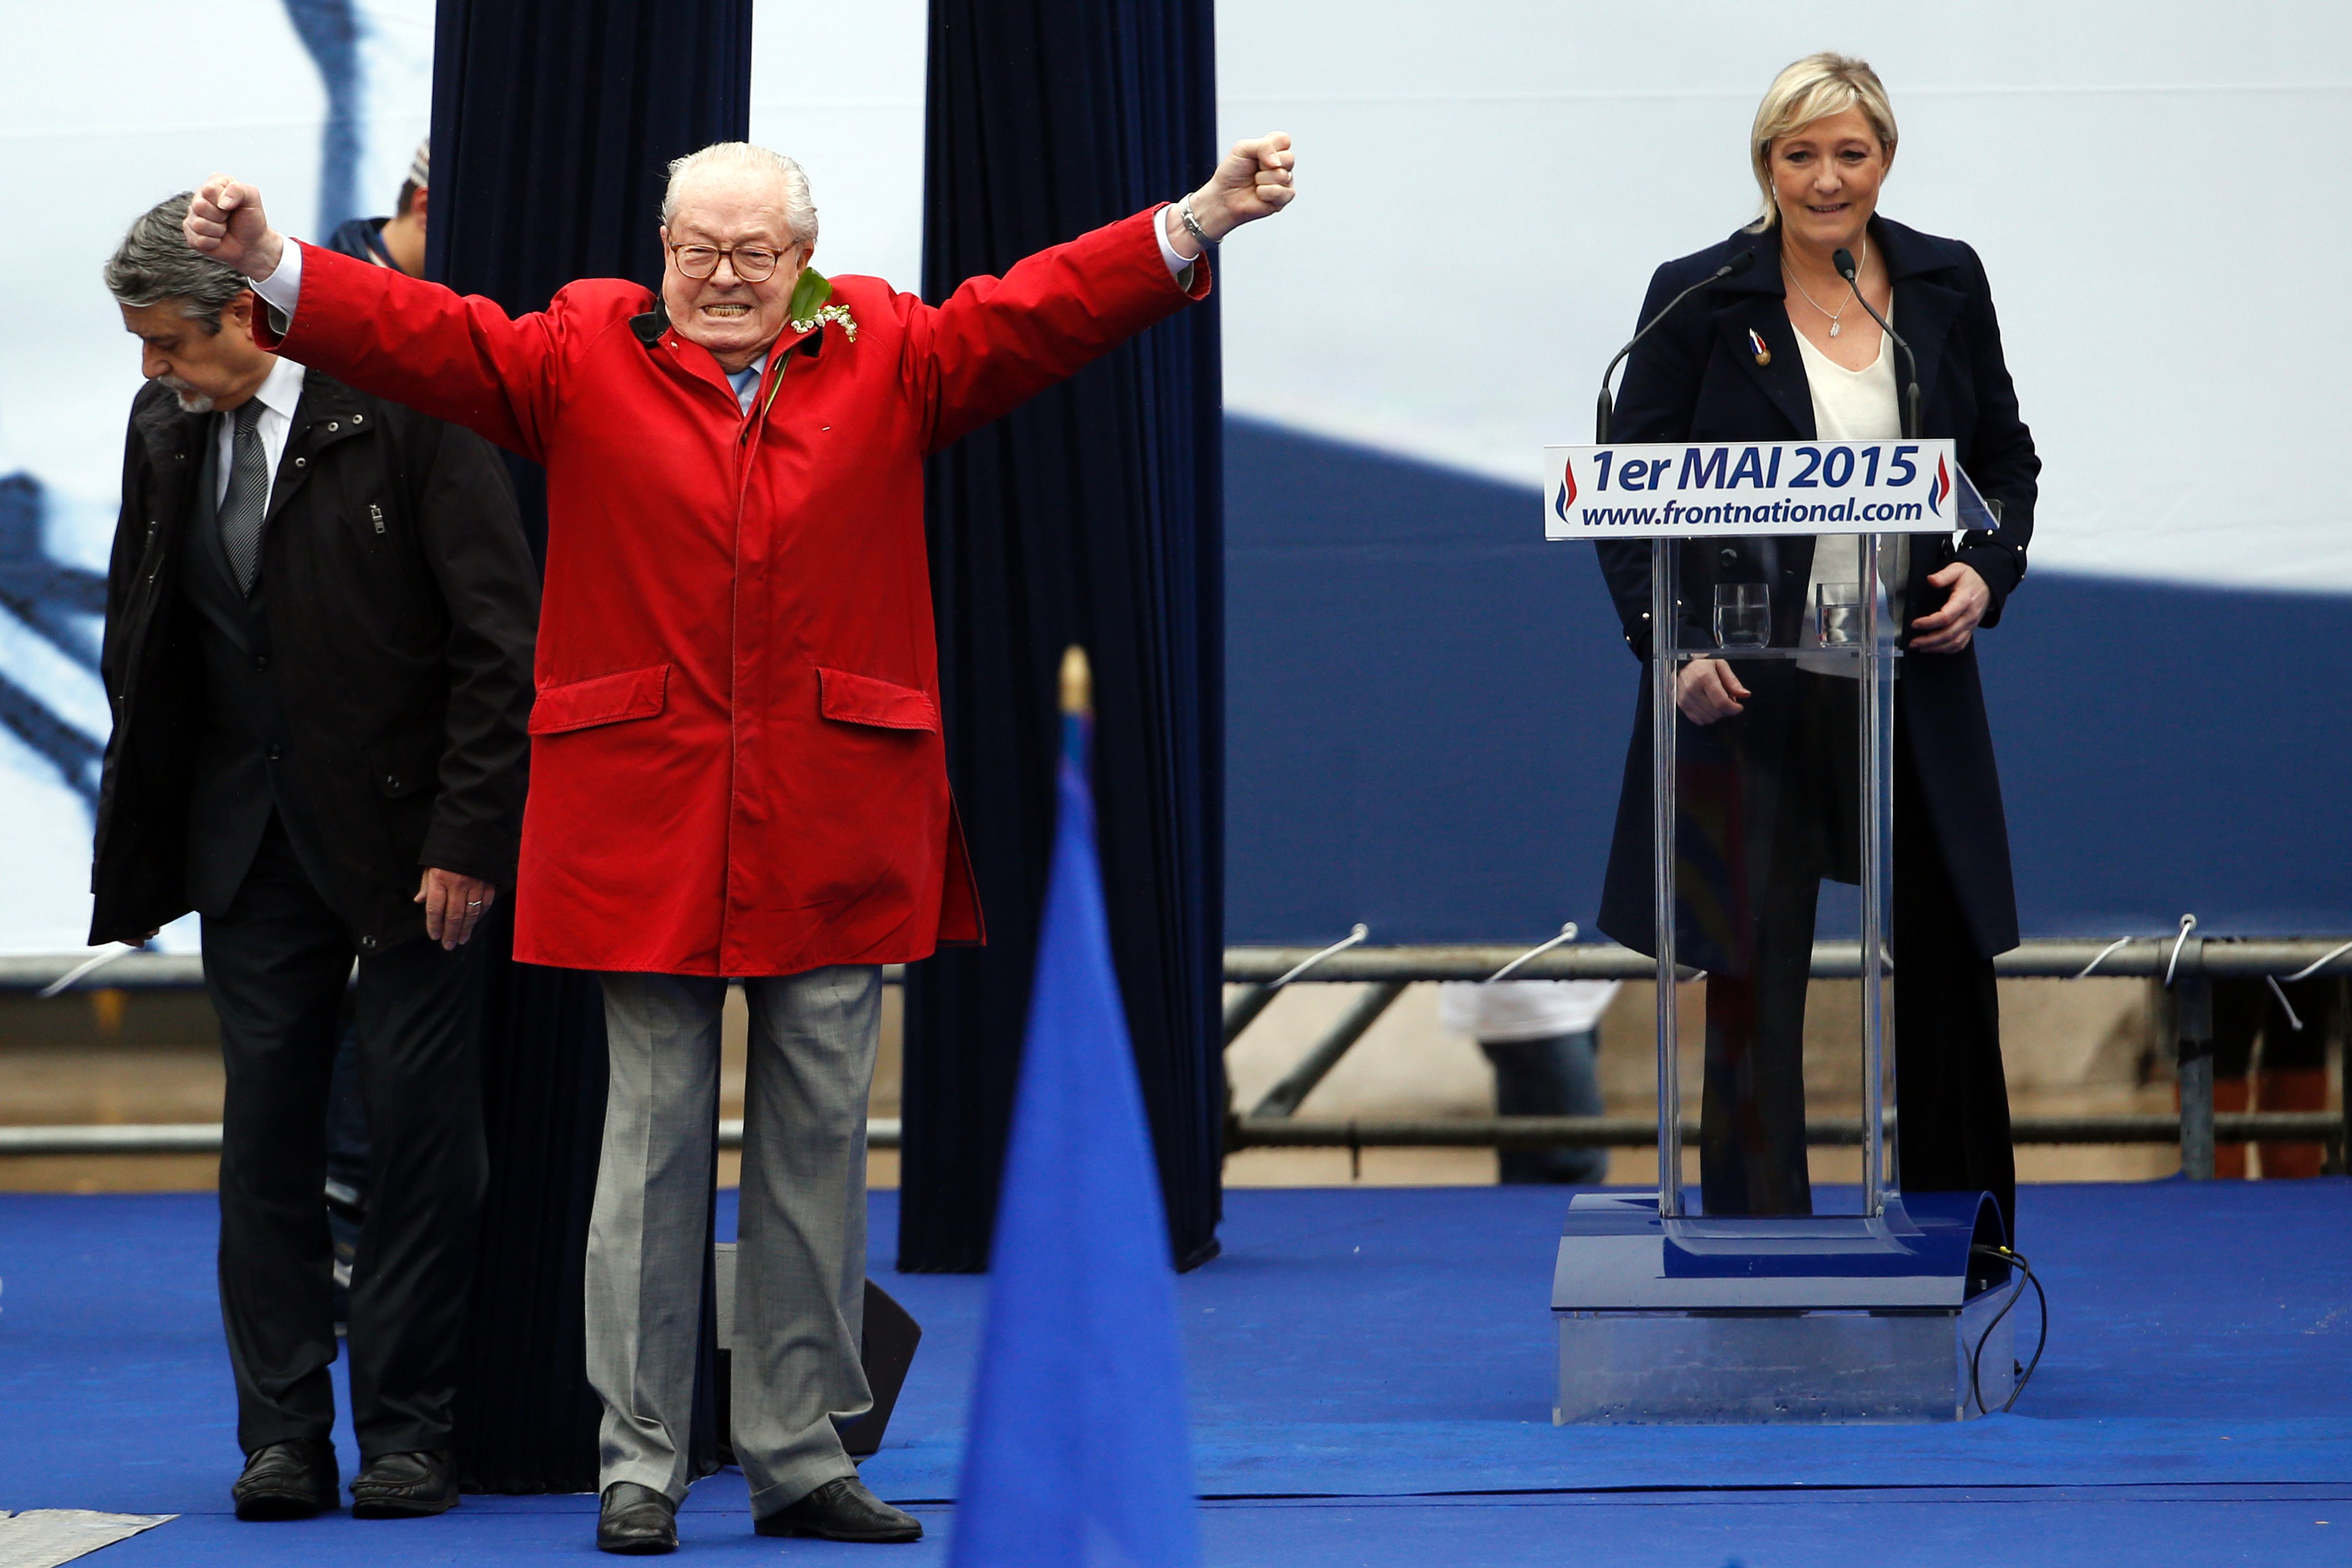 Le Pen critica campaña de su hija; le aconseja usar el "estilo Trump"